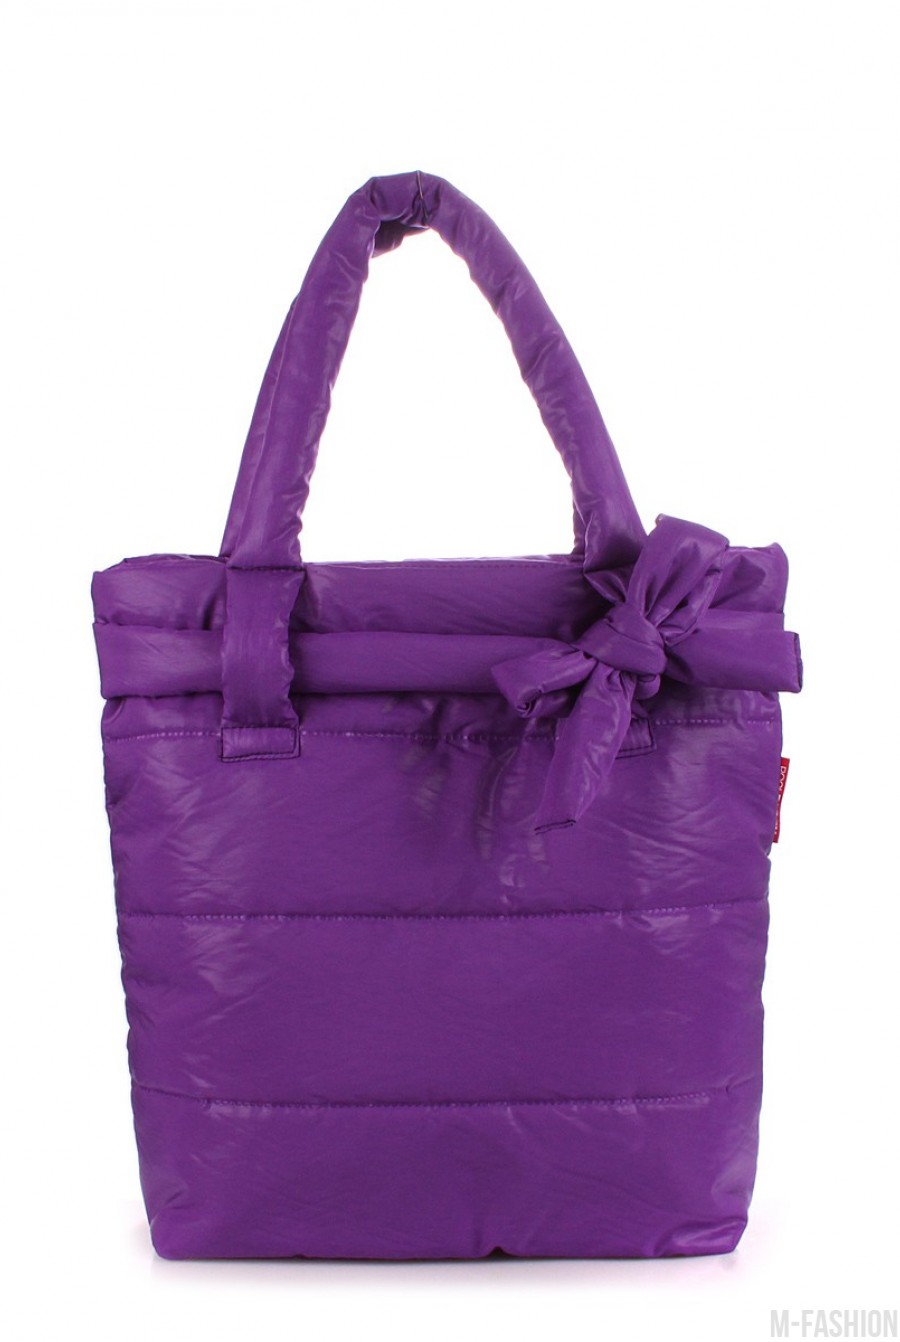 Дутая фиолетовая сумка с украшением бантом - Фото 1